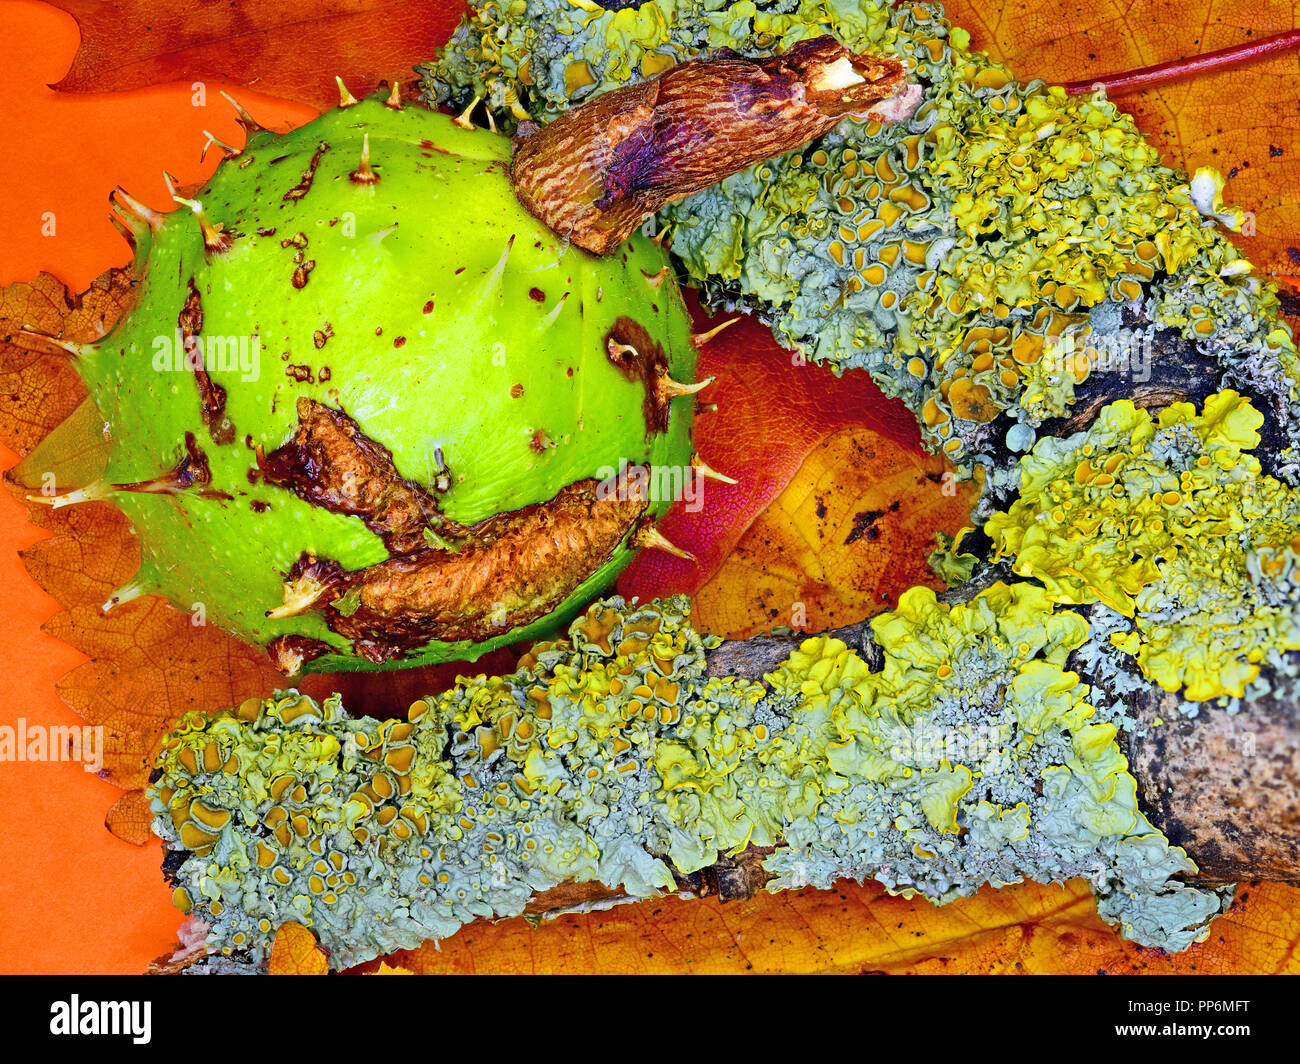 Conker marronnier au milieu les feuilles d'automne avec les pucerons et autres insectes Banque D'Images